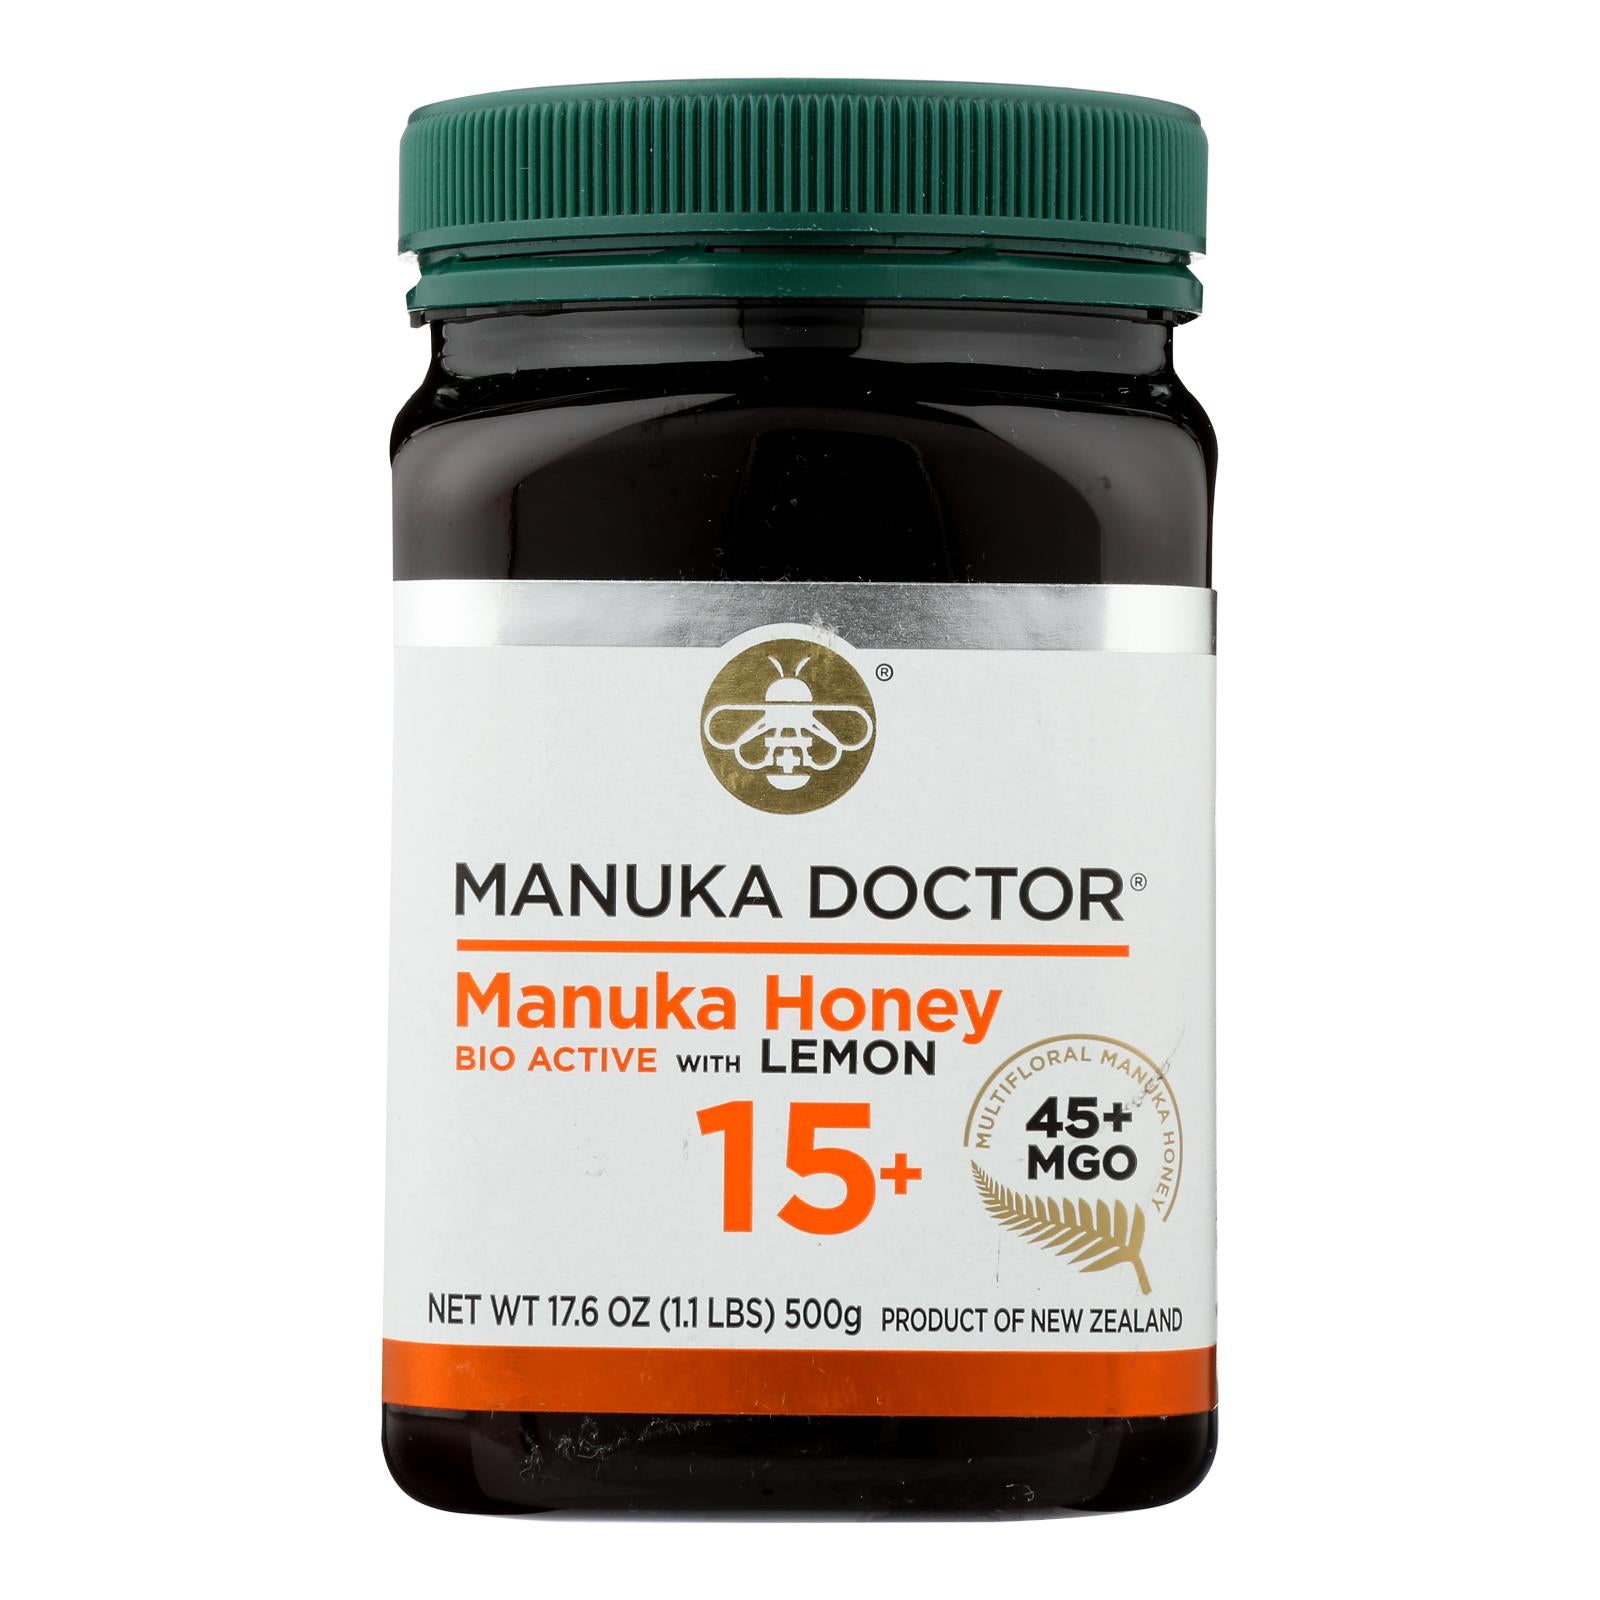 Manuka Doctor, Manuka Doctor 15+Bio Active Manuka Honey With Lemon - Case of 6 - 1.1 LB (Pack of 6)